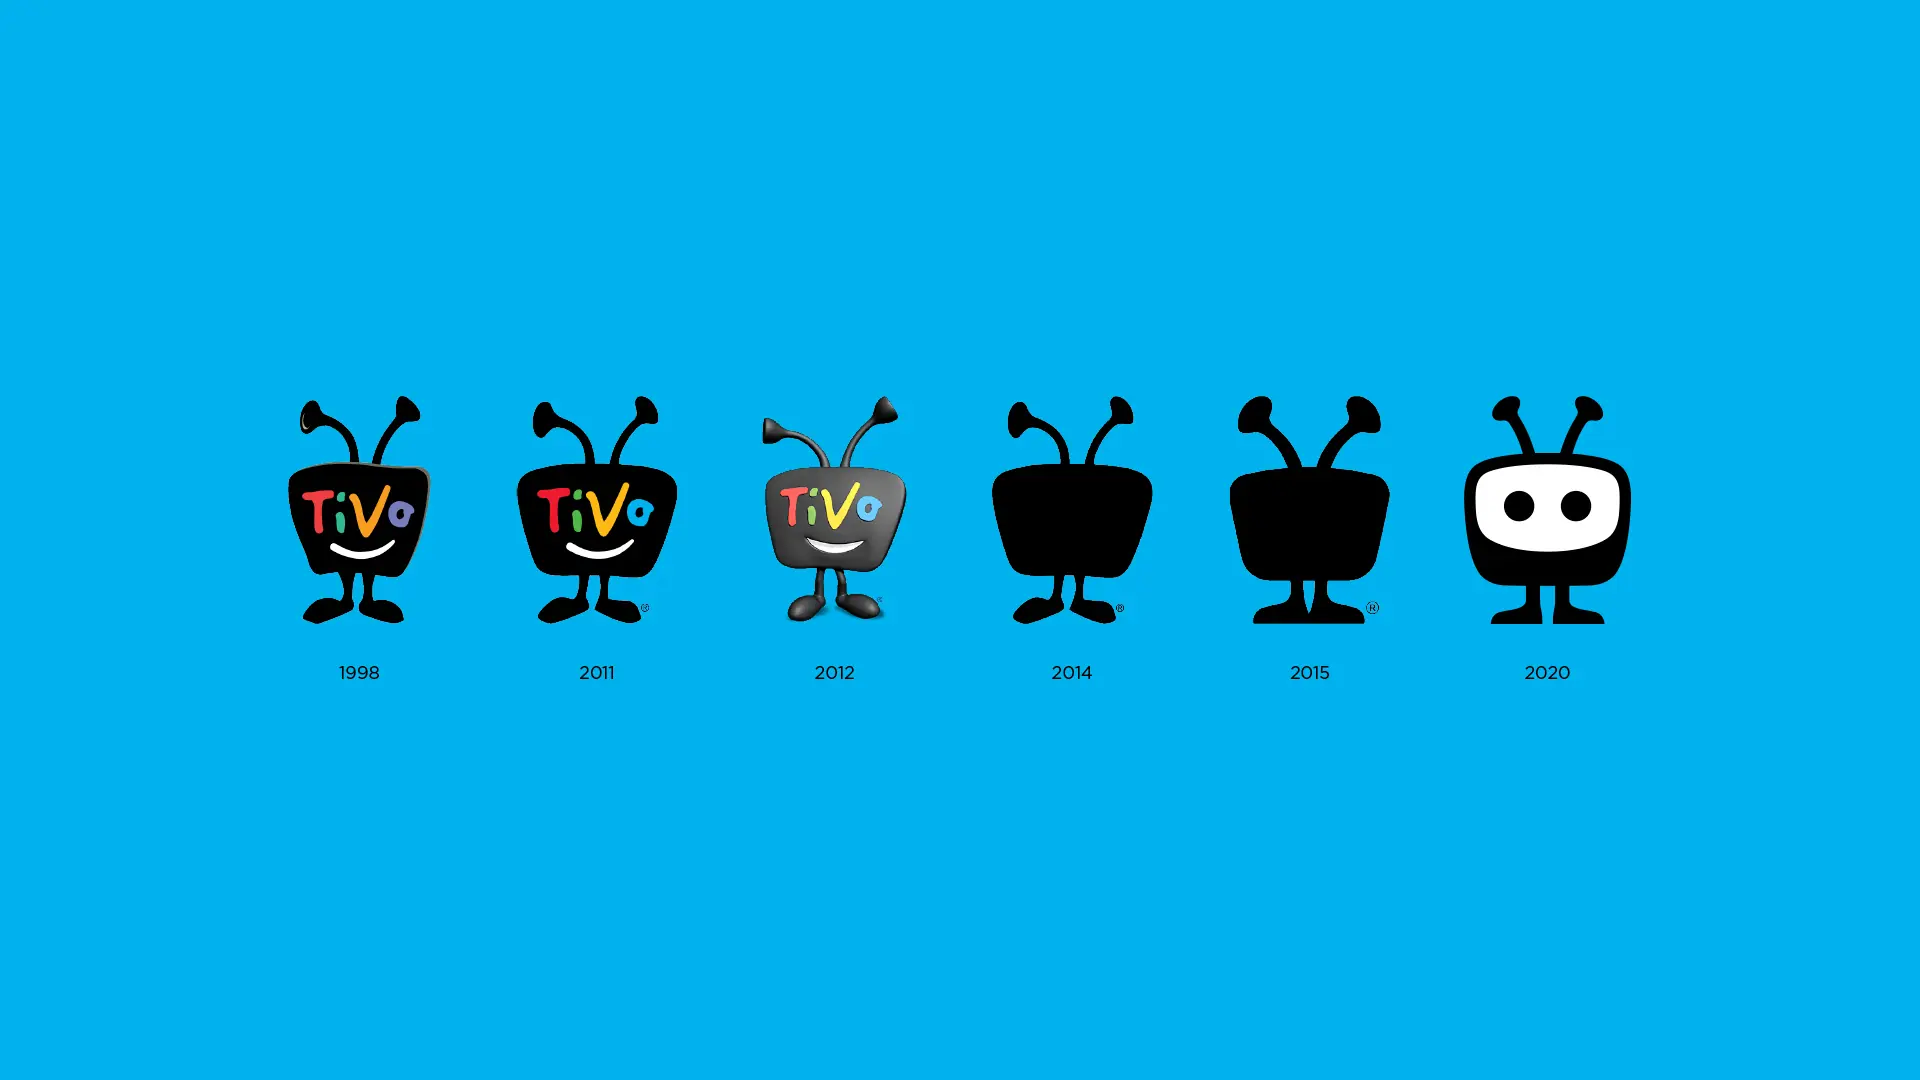 The TiVo logo